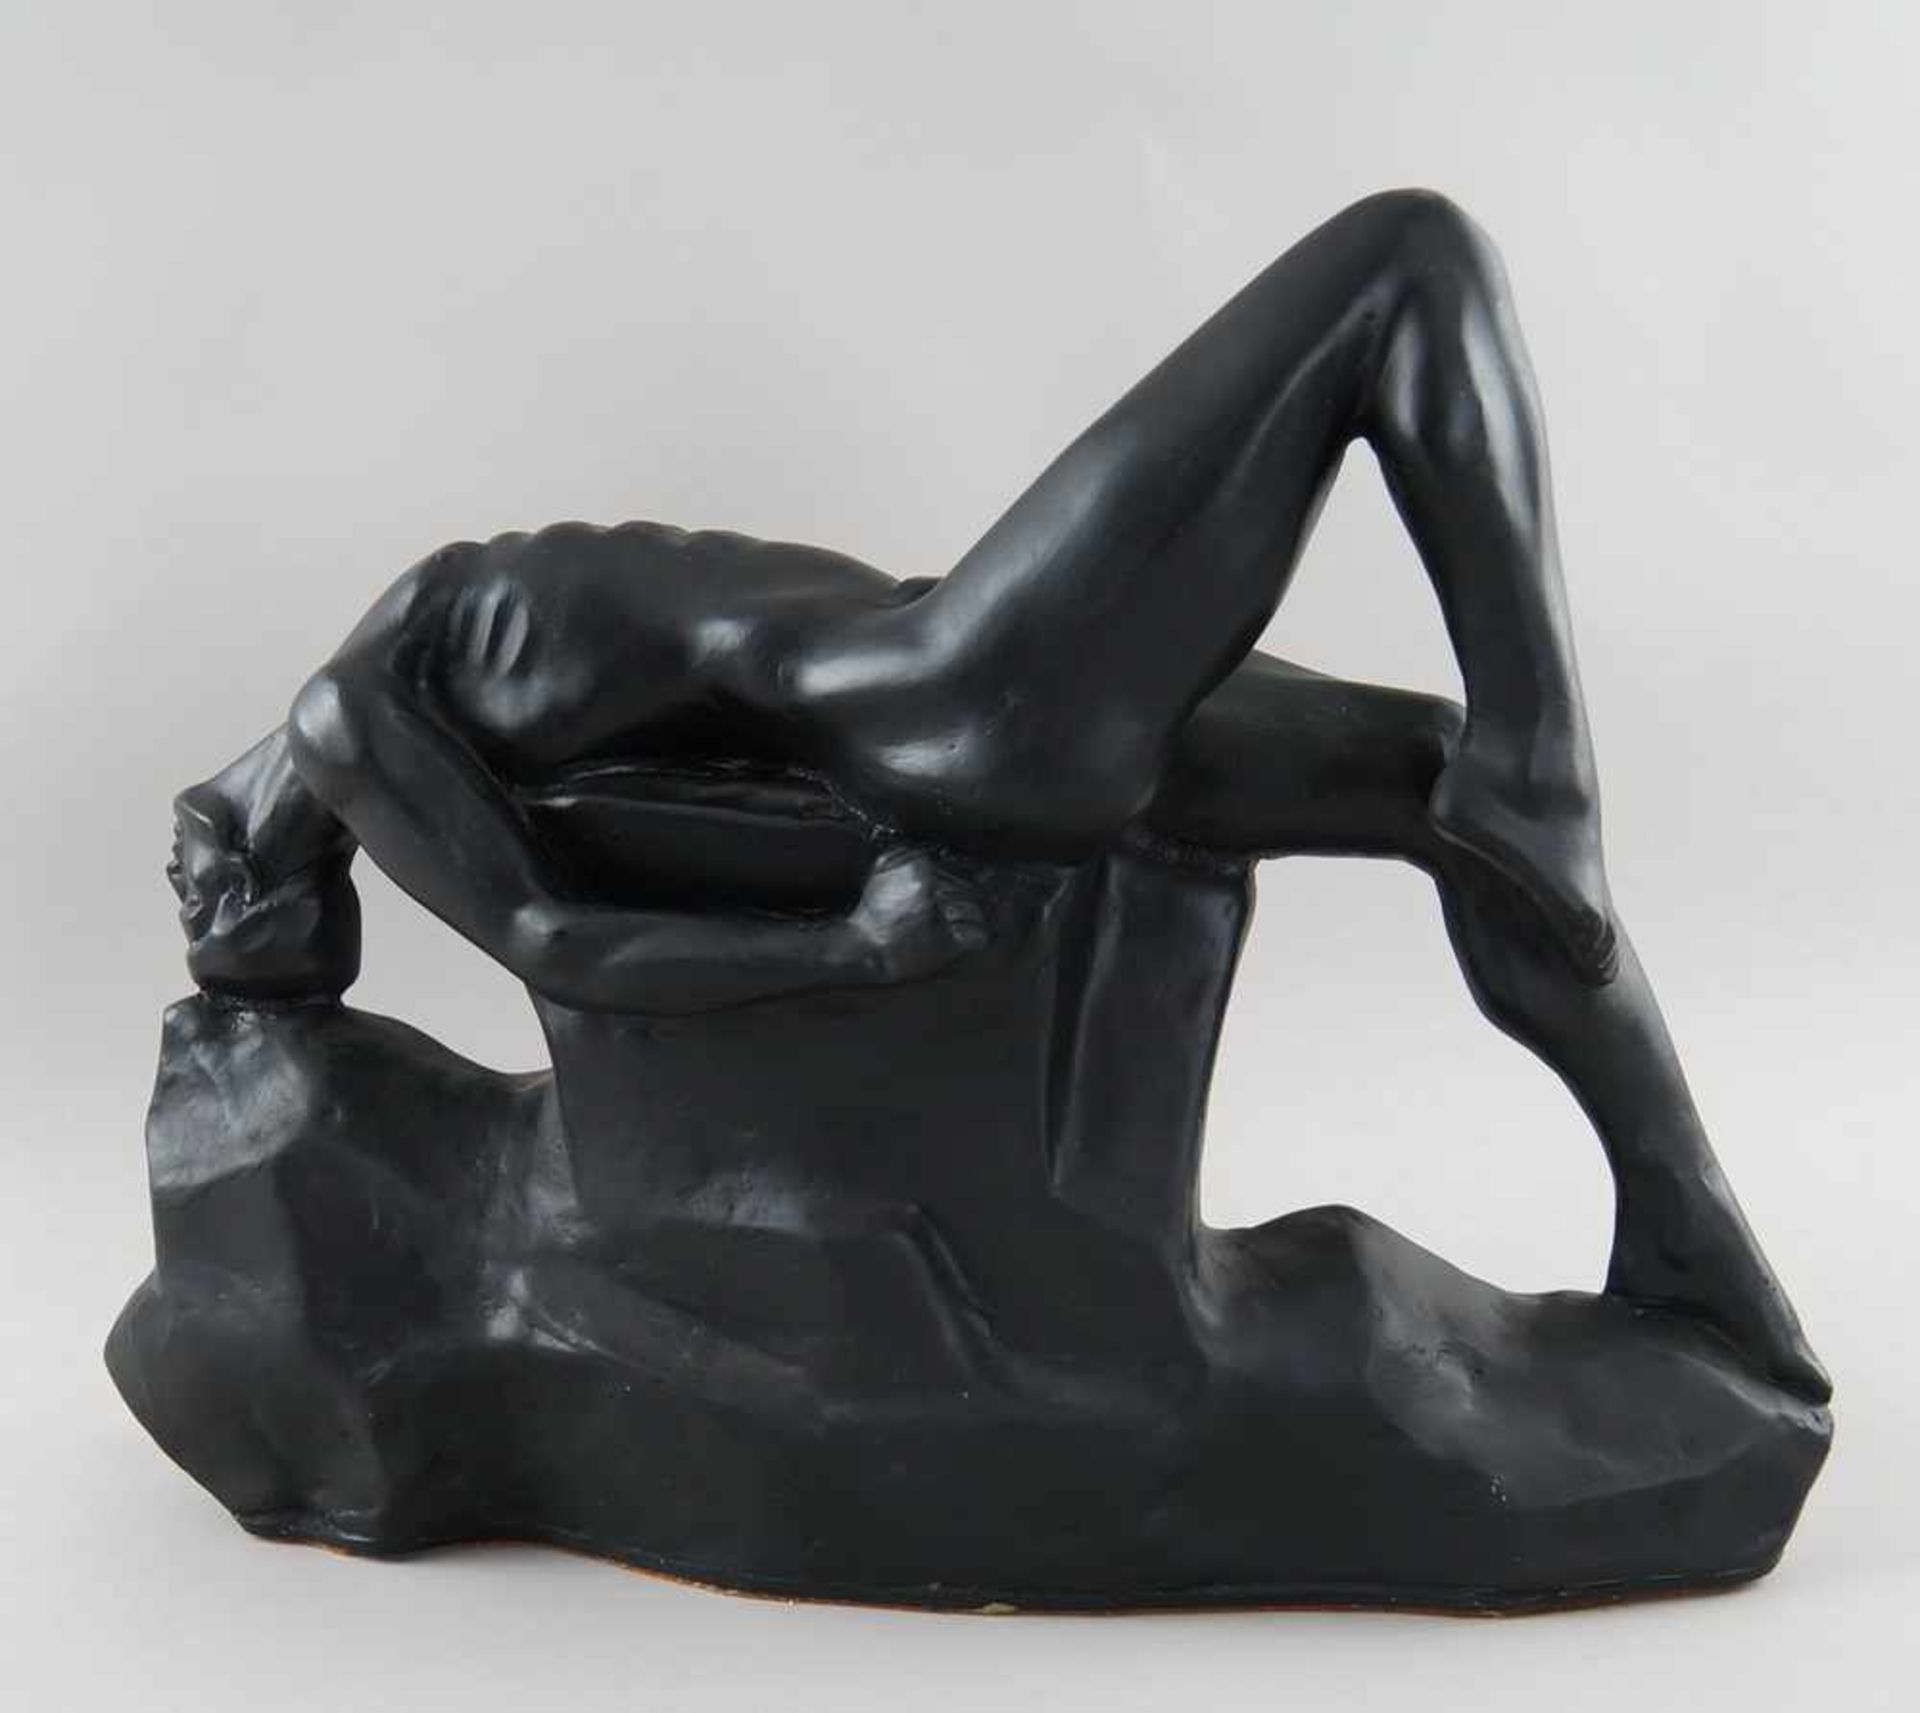 Männlicher Akt in erotischer Pose, modelliertes Material, signiert, L 59 cm - Bild 5 aus 5